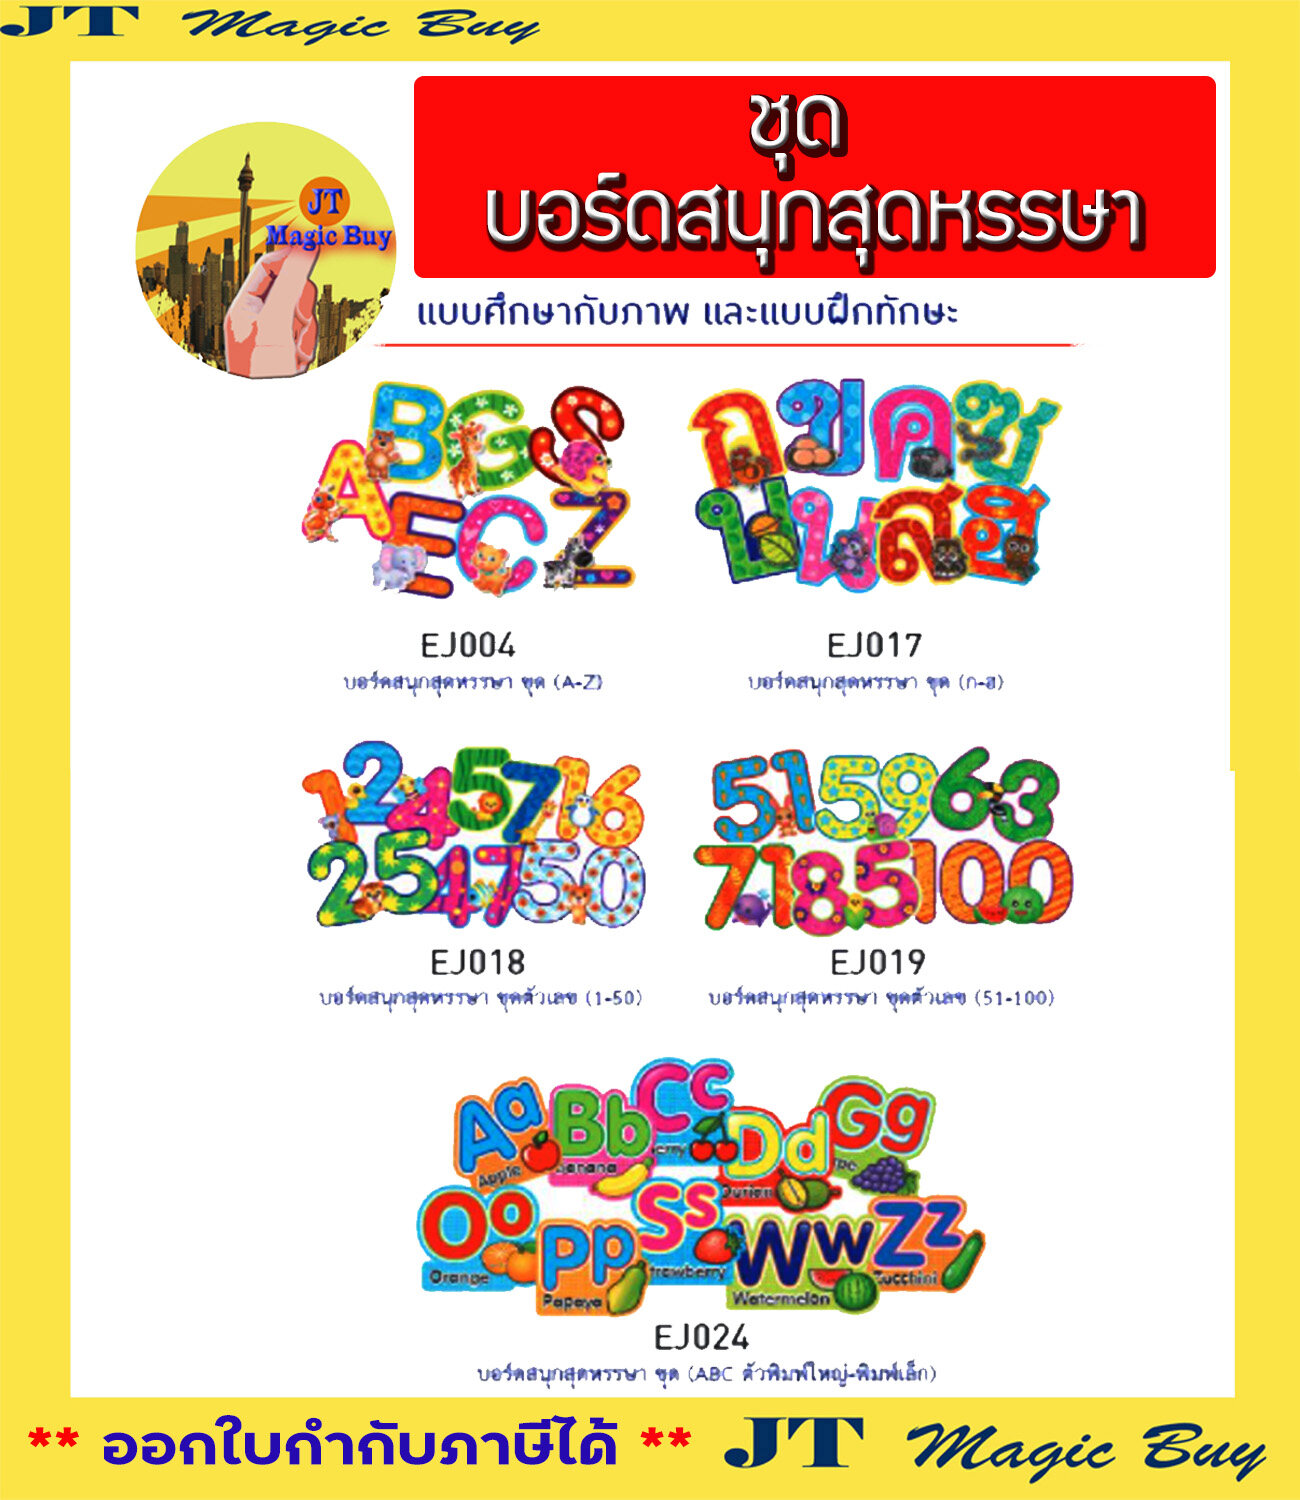 บอร์ดสนุกสุดหรรษา ตัวอักษร ตัวเลข สื่อการเรียนการสอน สื่อเสริมทักษะ ภาษาไทย ภาษาอังกฤษ บัตรคำ การ์ดคำศัพท์